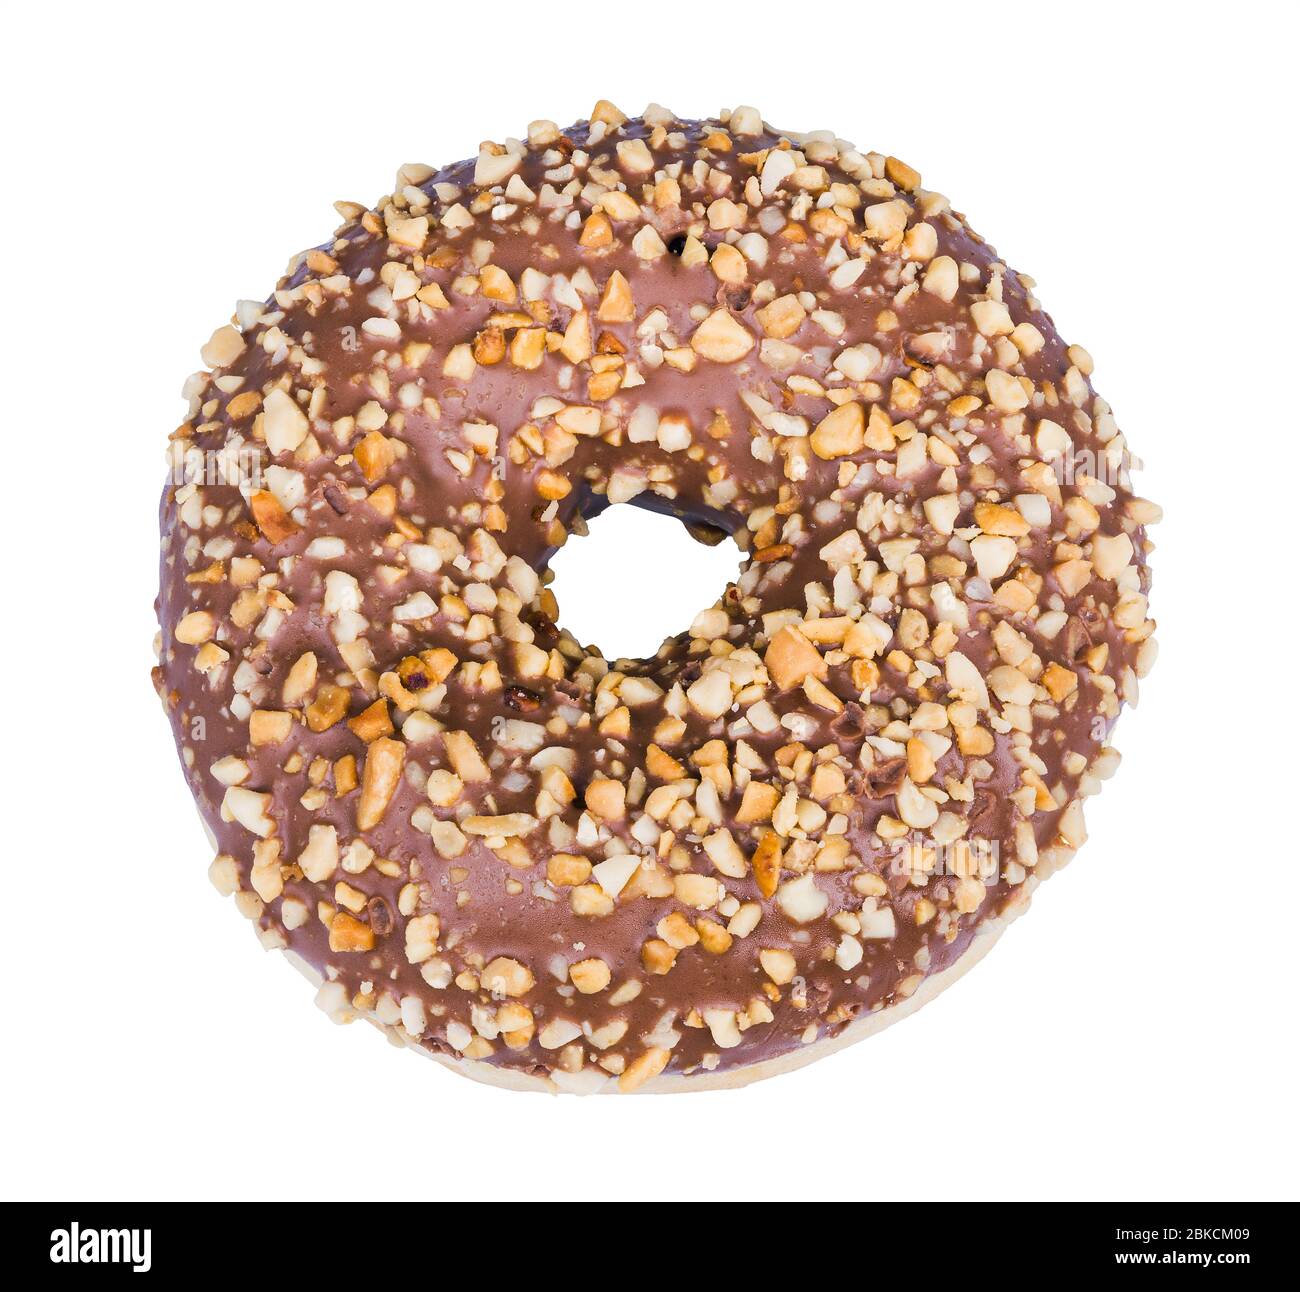 Donut horneado decorado con guisas de turrón y nueces machacadas aisladas sobre fondo blanco. Una donut dulce con agujero redondo, esmalte de cacao y piezas de nuez. Foto de stock